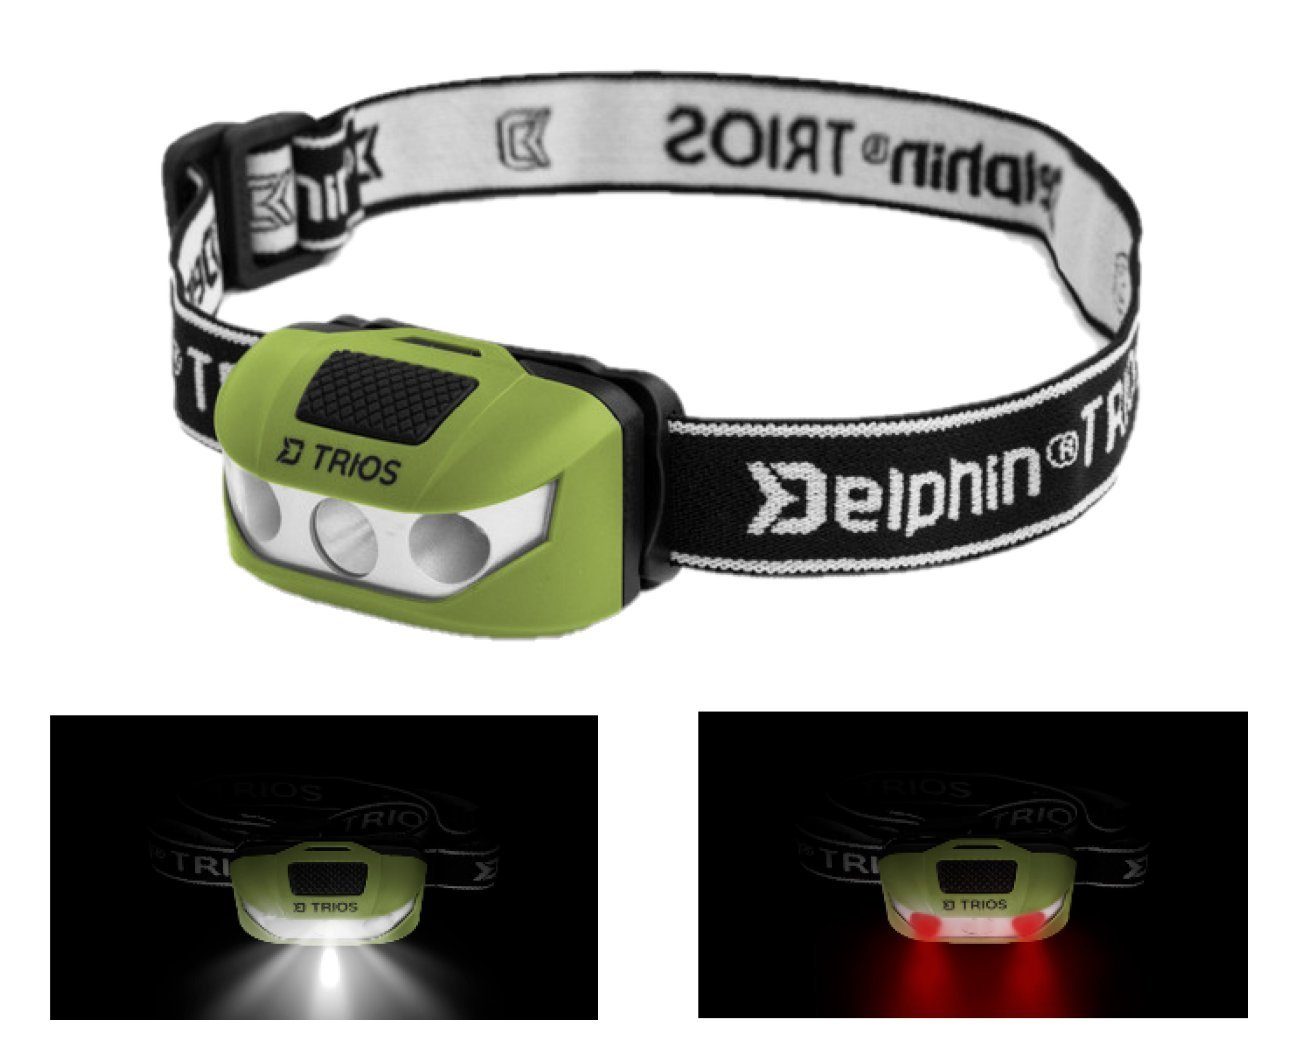 Delphin.sk LED hat Stirnlampe LEDs Sie LED das Stirnlampe 2 Headlight, Kopflampe nutzen können Licht beim eine so Lesen weiße 1 Headlamp TRIOS dass Sie rote Neigung